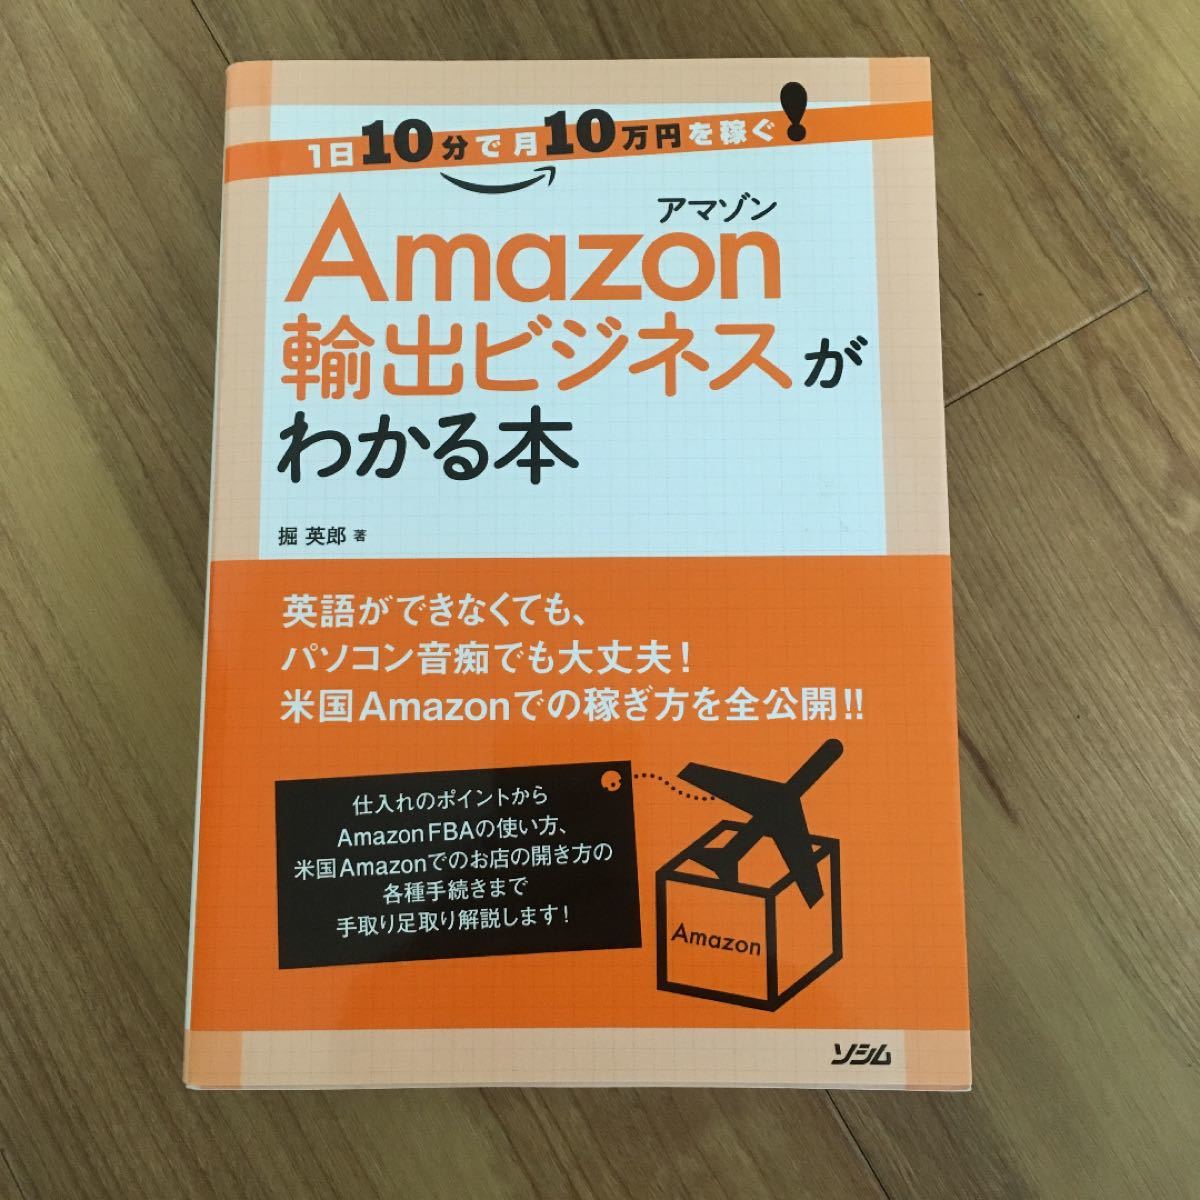 Amazon輸出ビジネスがわかる本 : 1日10分で月10万円を稼ぐ!